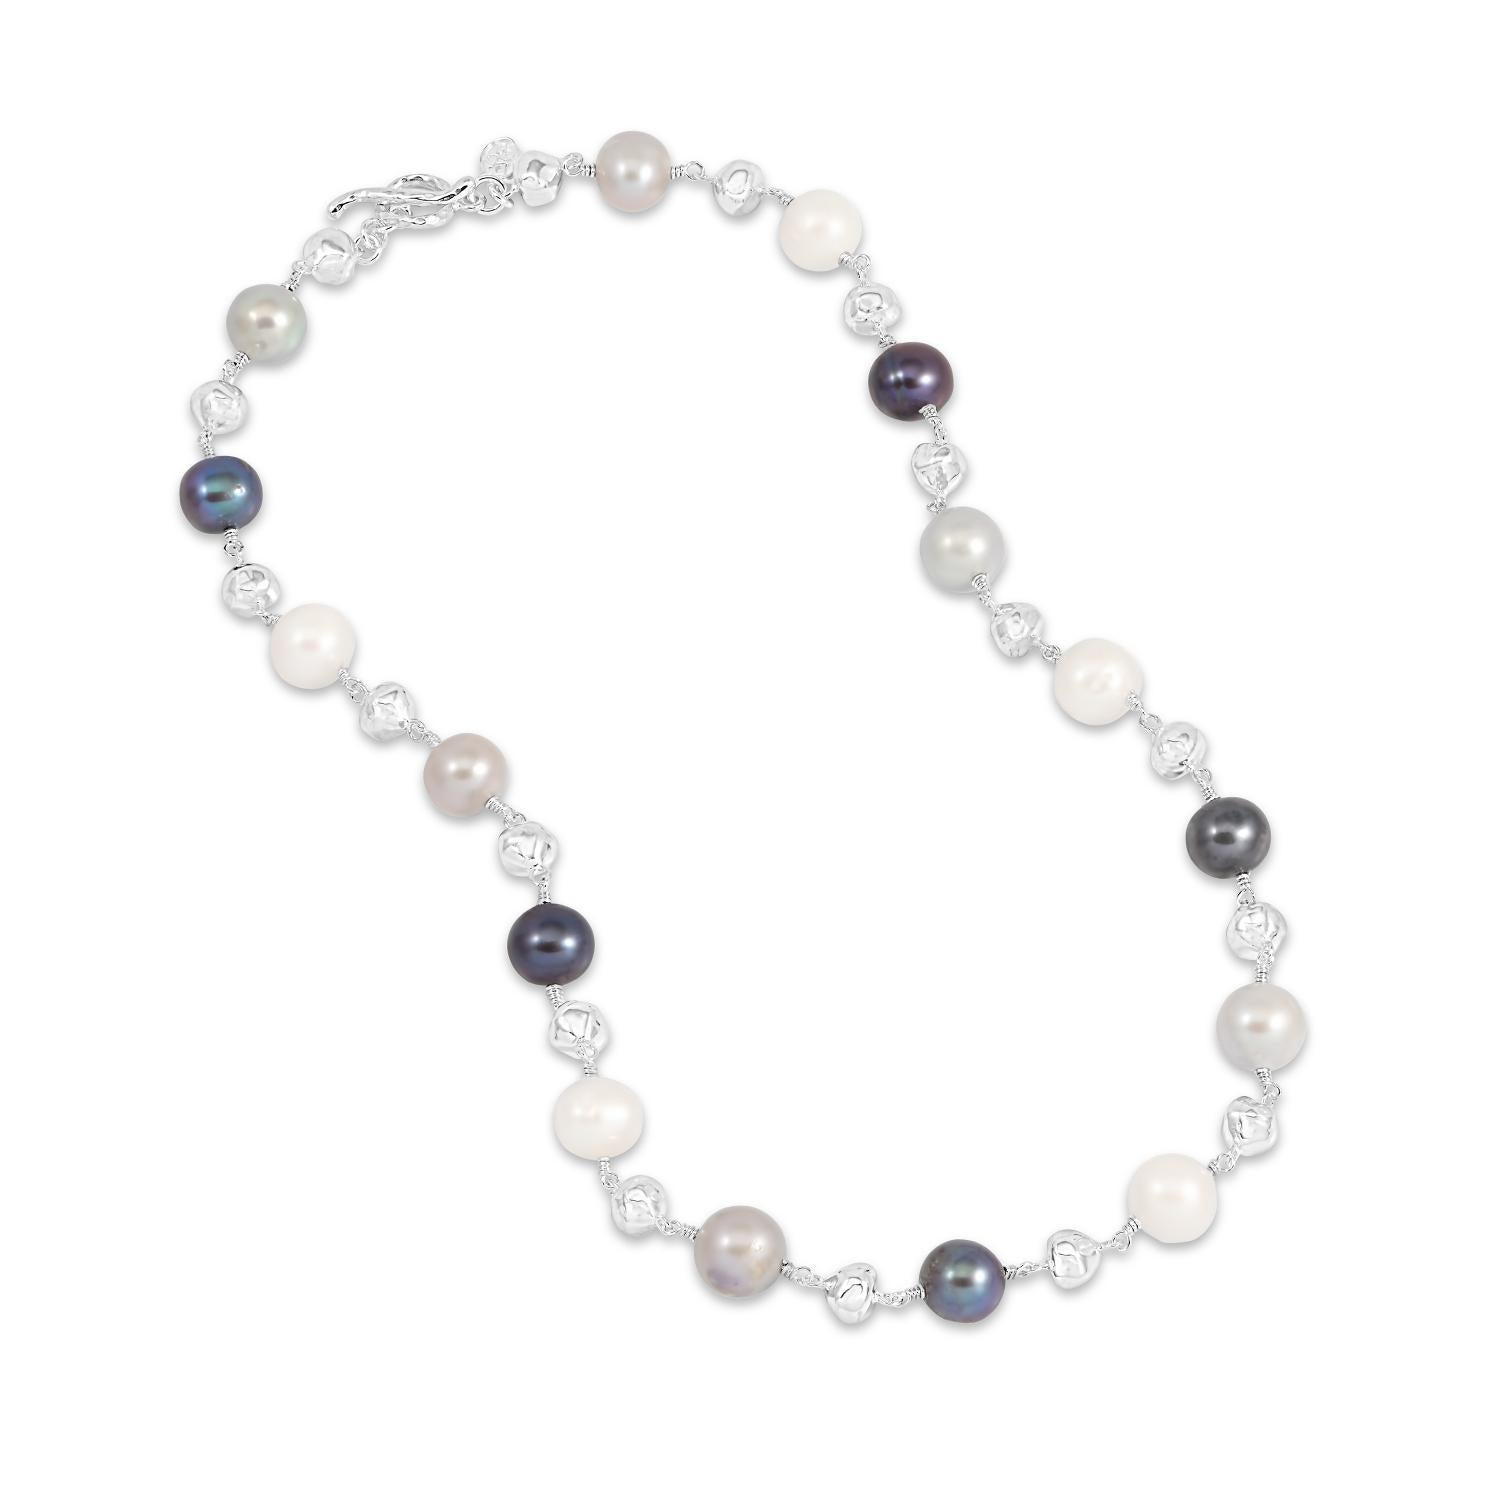 Diese Halskette aus unserer Luna Pearls-Reihe besteht aus gemischten Süßwasser-Zuchtperlen in Weiß, Taubengrau und Pfauentönen, die mit 7 Sterlingsilber-Nuggets durchsetzt sind. Die 5 mm großen Nuggets haben ein weiches, geschlagenes Finish, das der